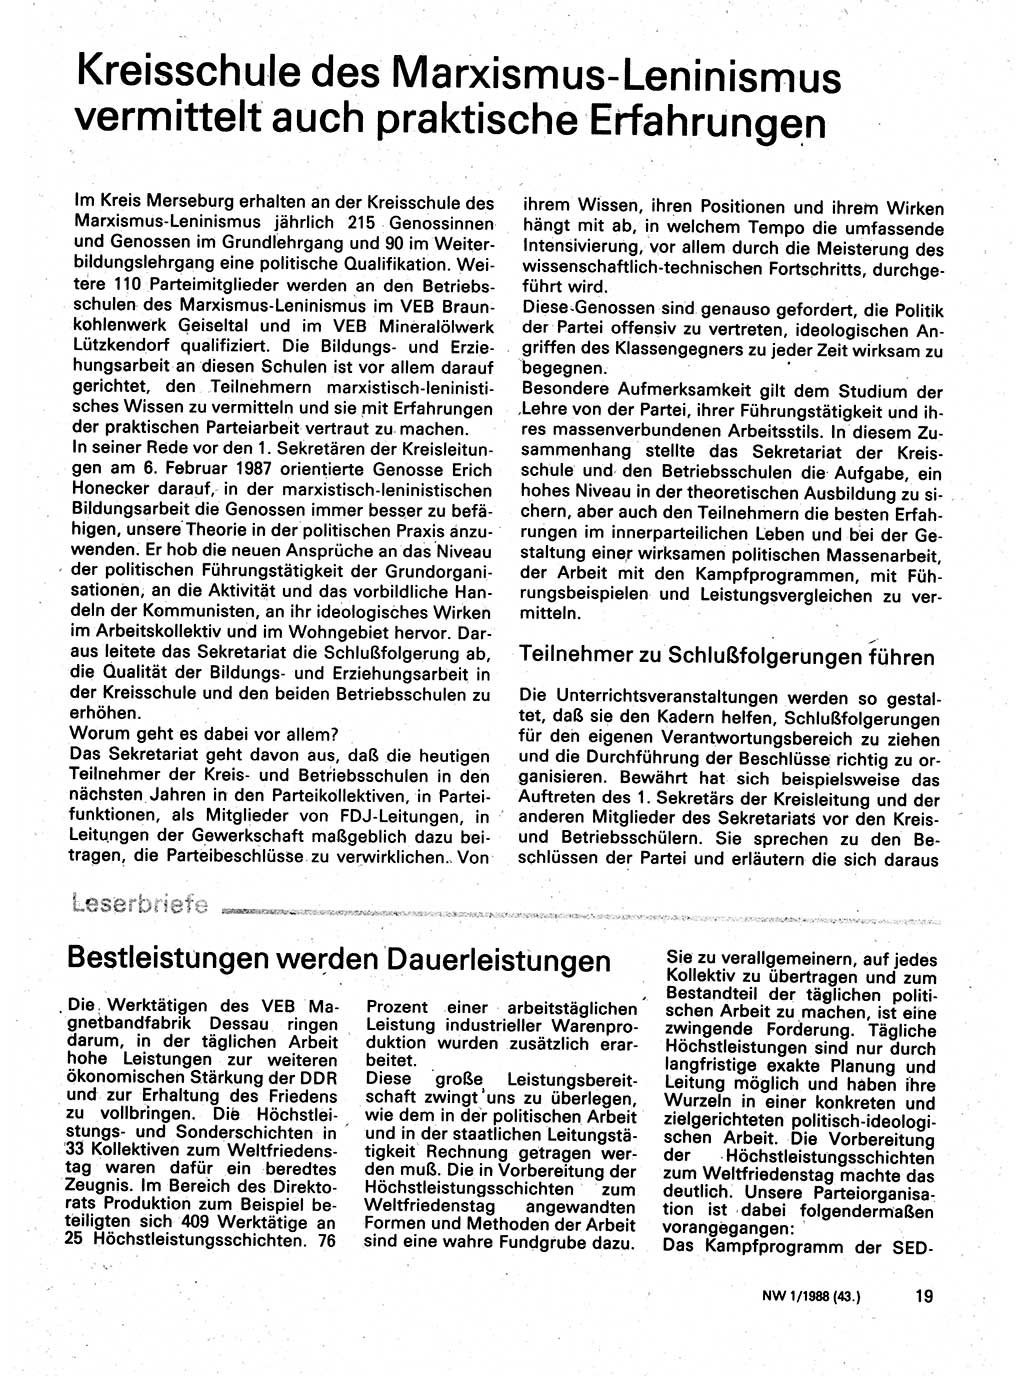 Neuer Weg (NW), Organ des Zentralkomitees (ZK) der SED (Sozialistische Einheitspartei Deutschlands) für Fragen des Parteilebens, 43. Jahrgang [Deutsche Demokratische Republik (DDR)] 1988, Seite 19 (NW ZK SED DDR 1988, S. 19)